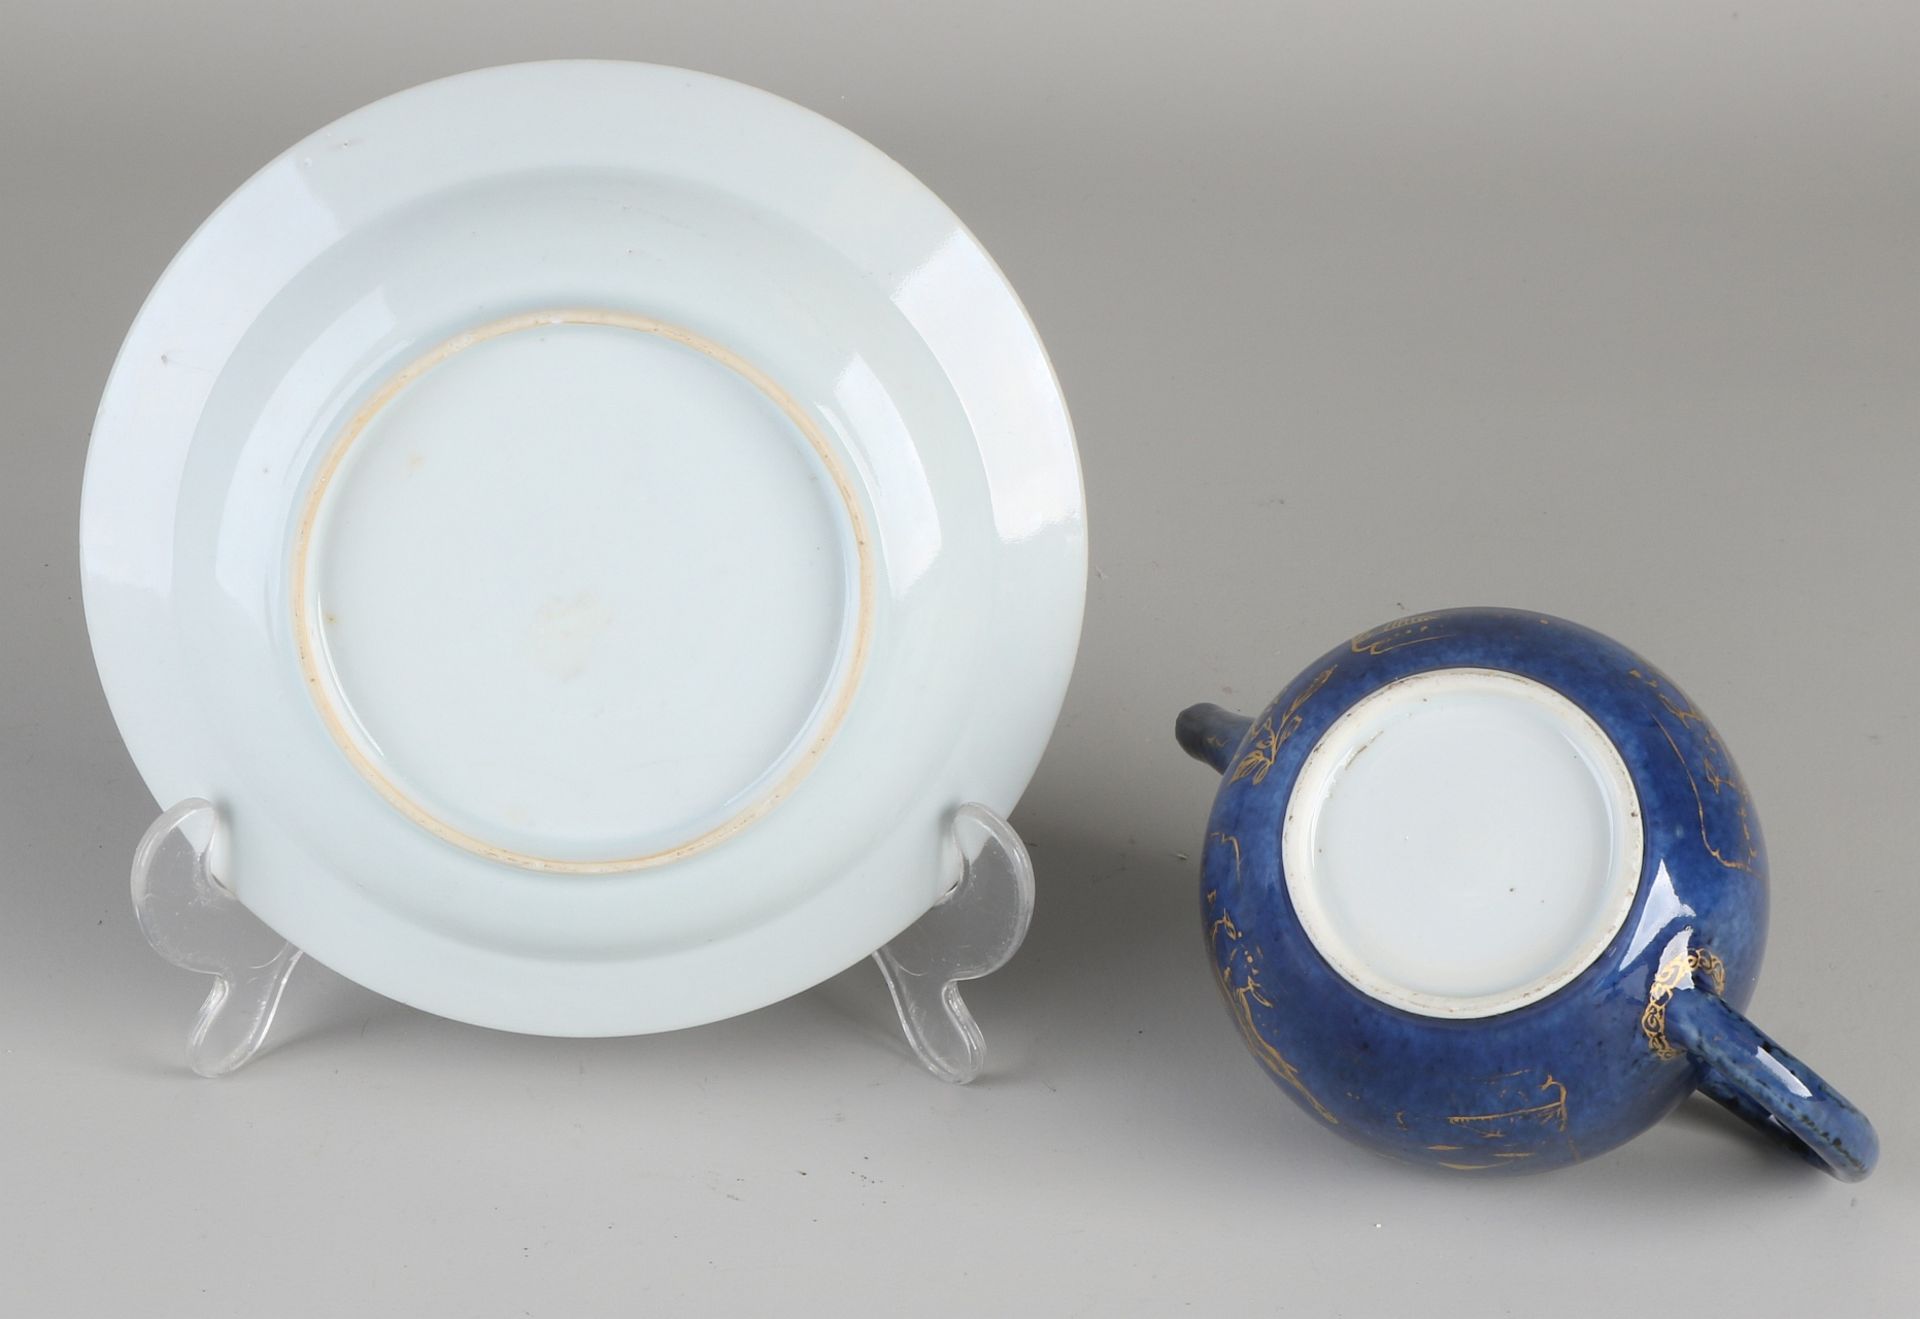 Chinesische Porzellanteekanne aus dem 19. Jahrhundert mit Untertasse. Blaue Glasur + Golddekor. A - Bild 2 aus 2